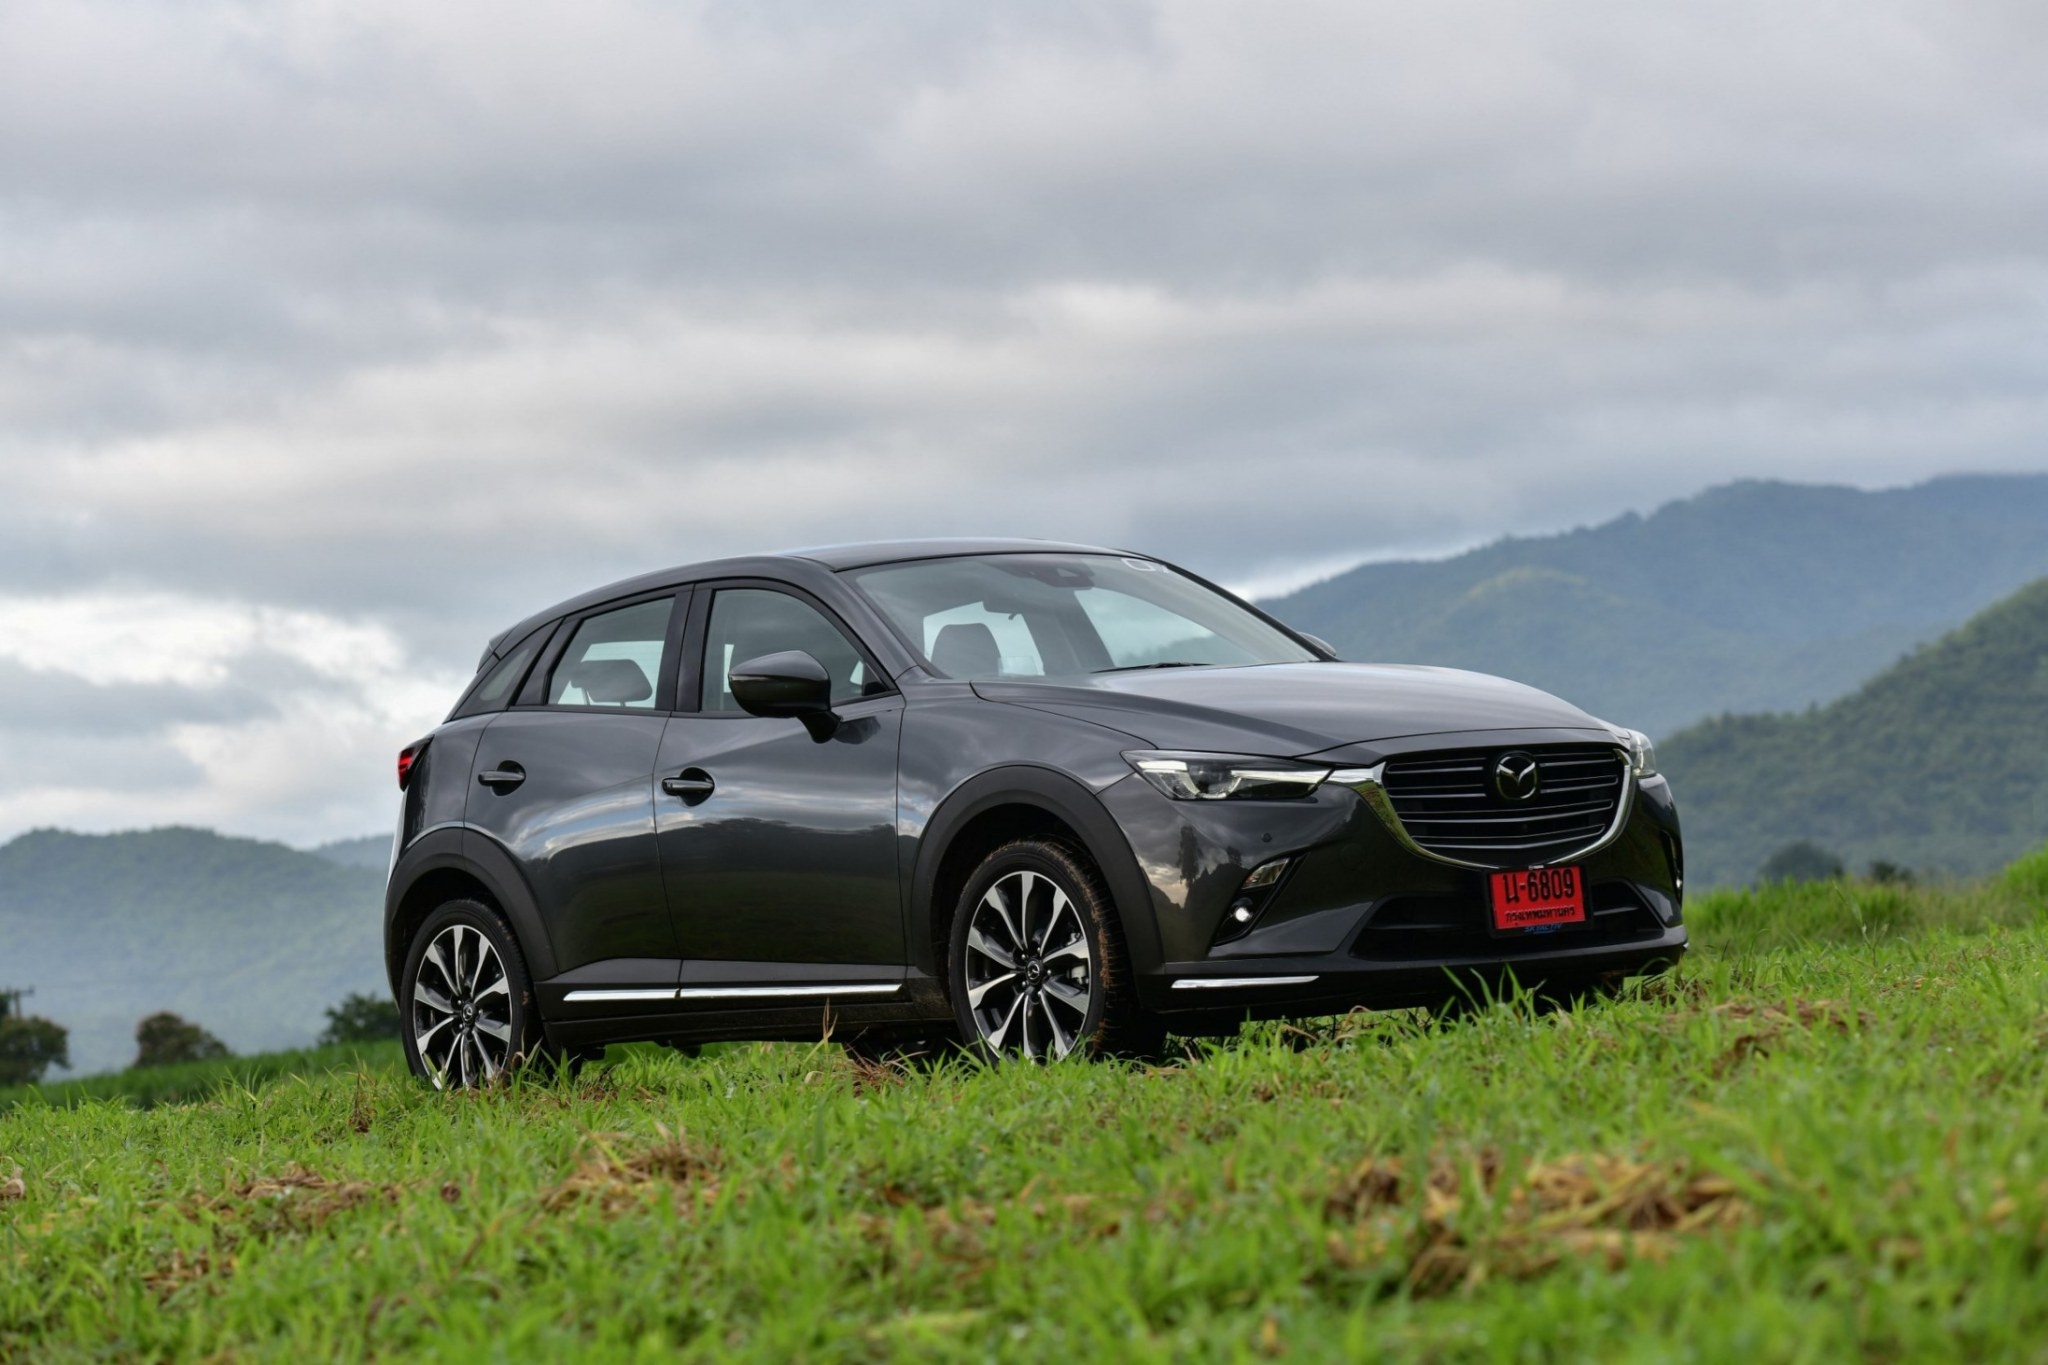 ผงาดครองแชมป์! Mazda มุ่งสู่อันดับ 1 ยอดขายตลาดเอสยูวีในเดือนเมษายน